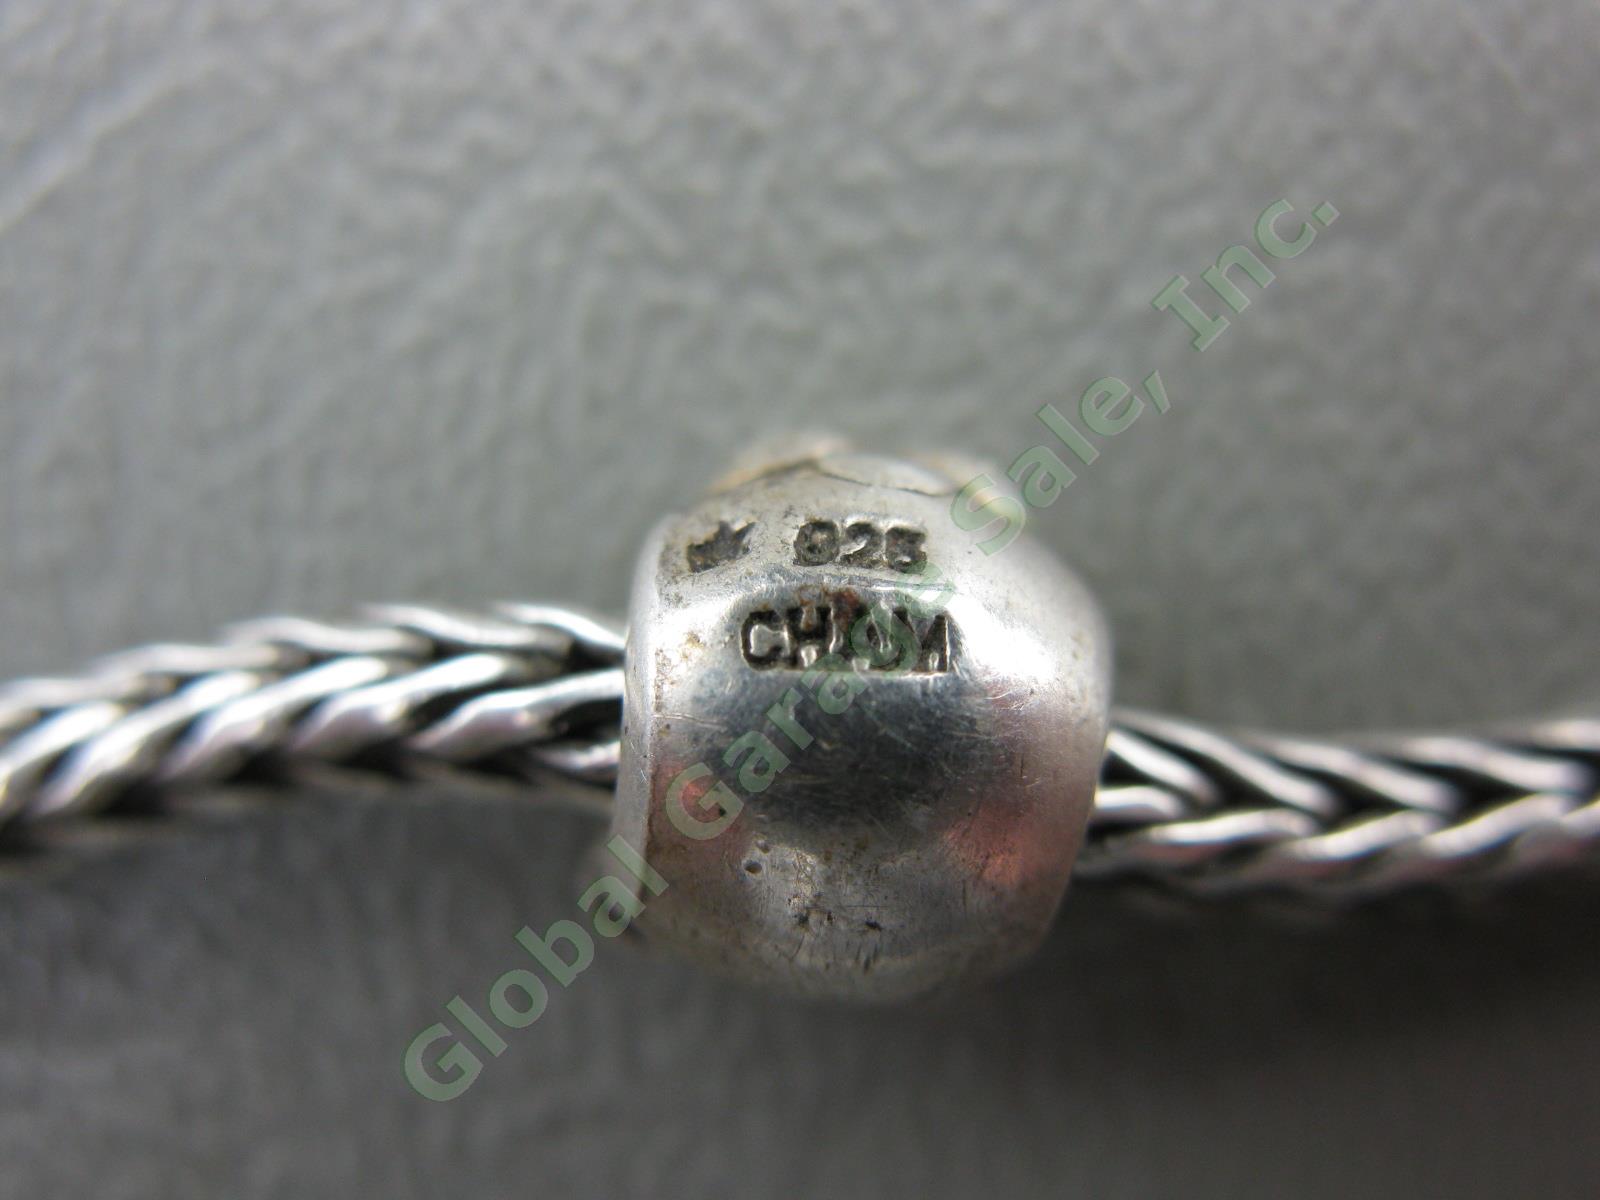 Trollbeads LAA 925 S Sterling Silver Bracelet Swan Lock Chamilia Charm Beads Lot 6